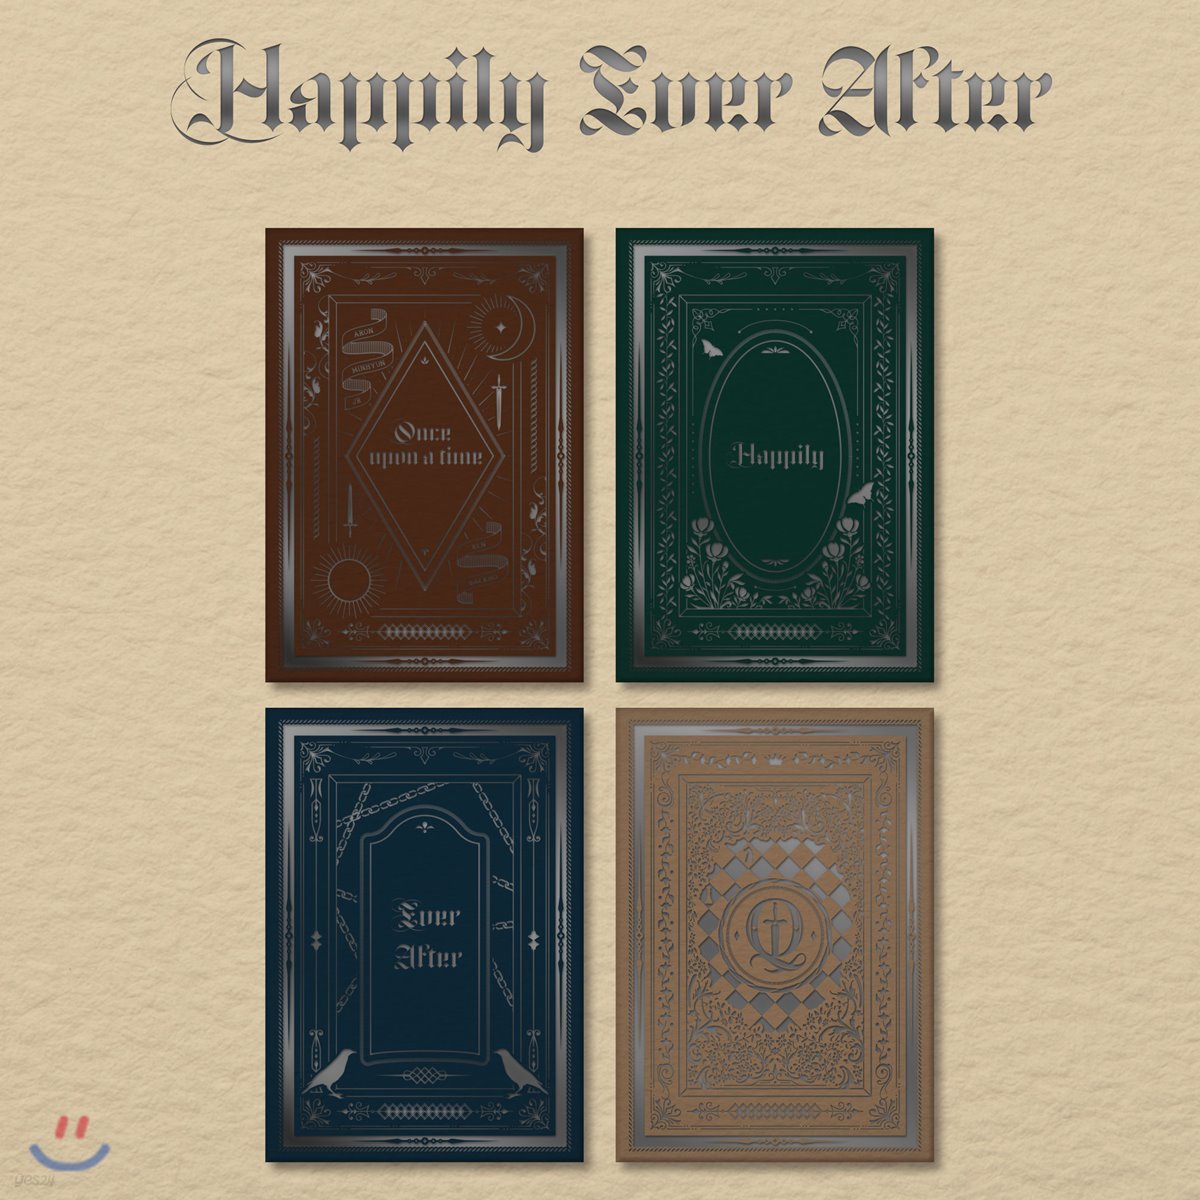 뉴이스트 (NU’EST) - 미니앨범 6집 : Happily Ever After [스마트 뮤직 앨범(키노 앨범)] (ver.1/2/3/4 중 랜덤발송)